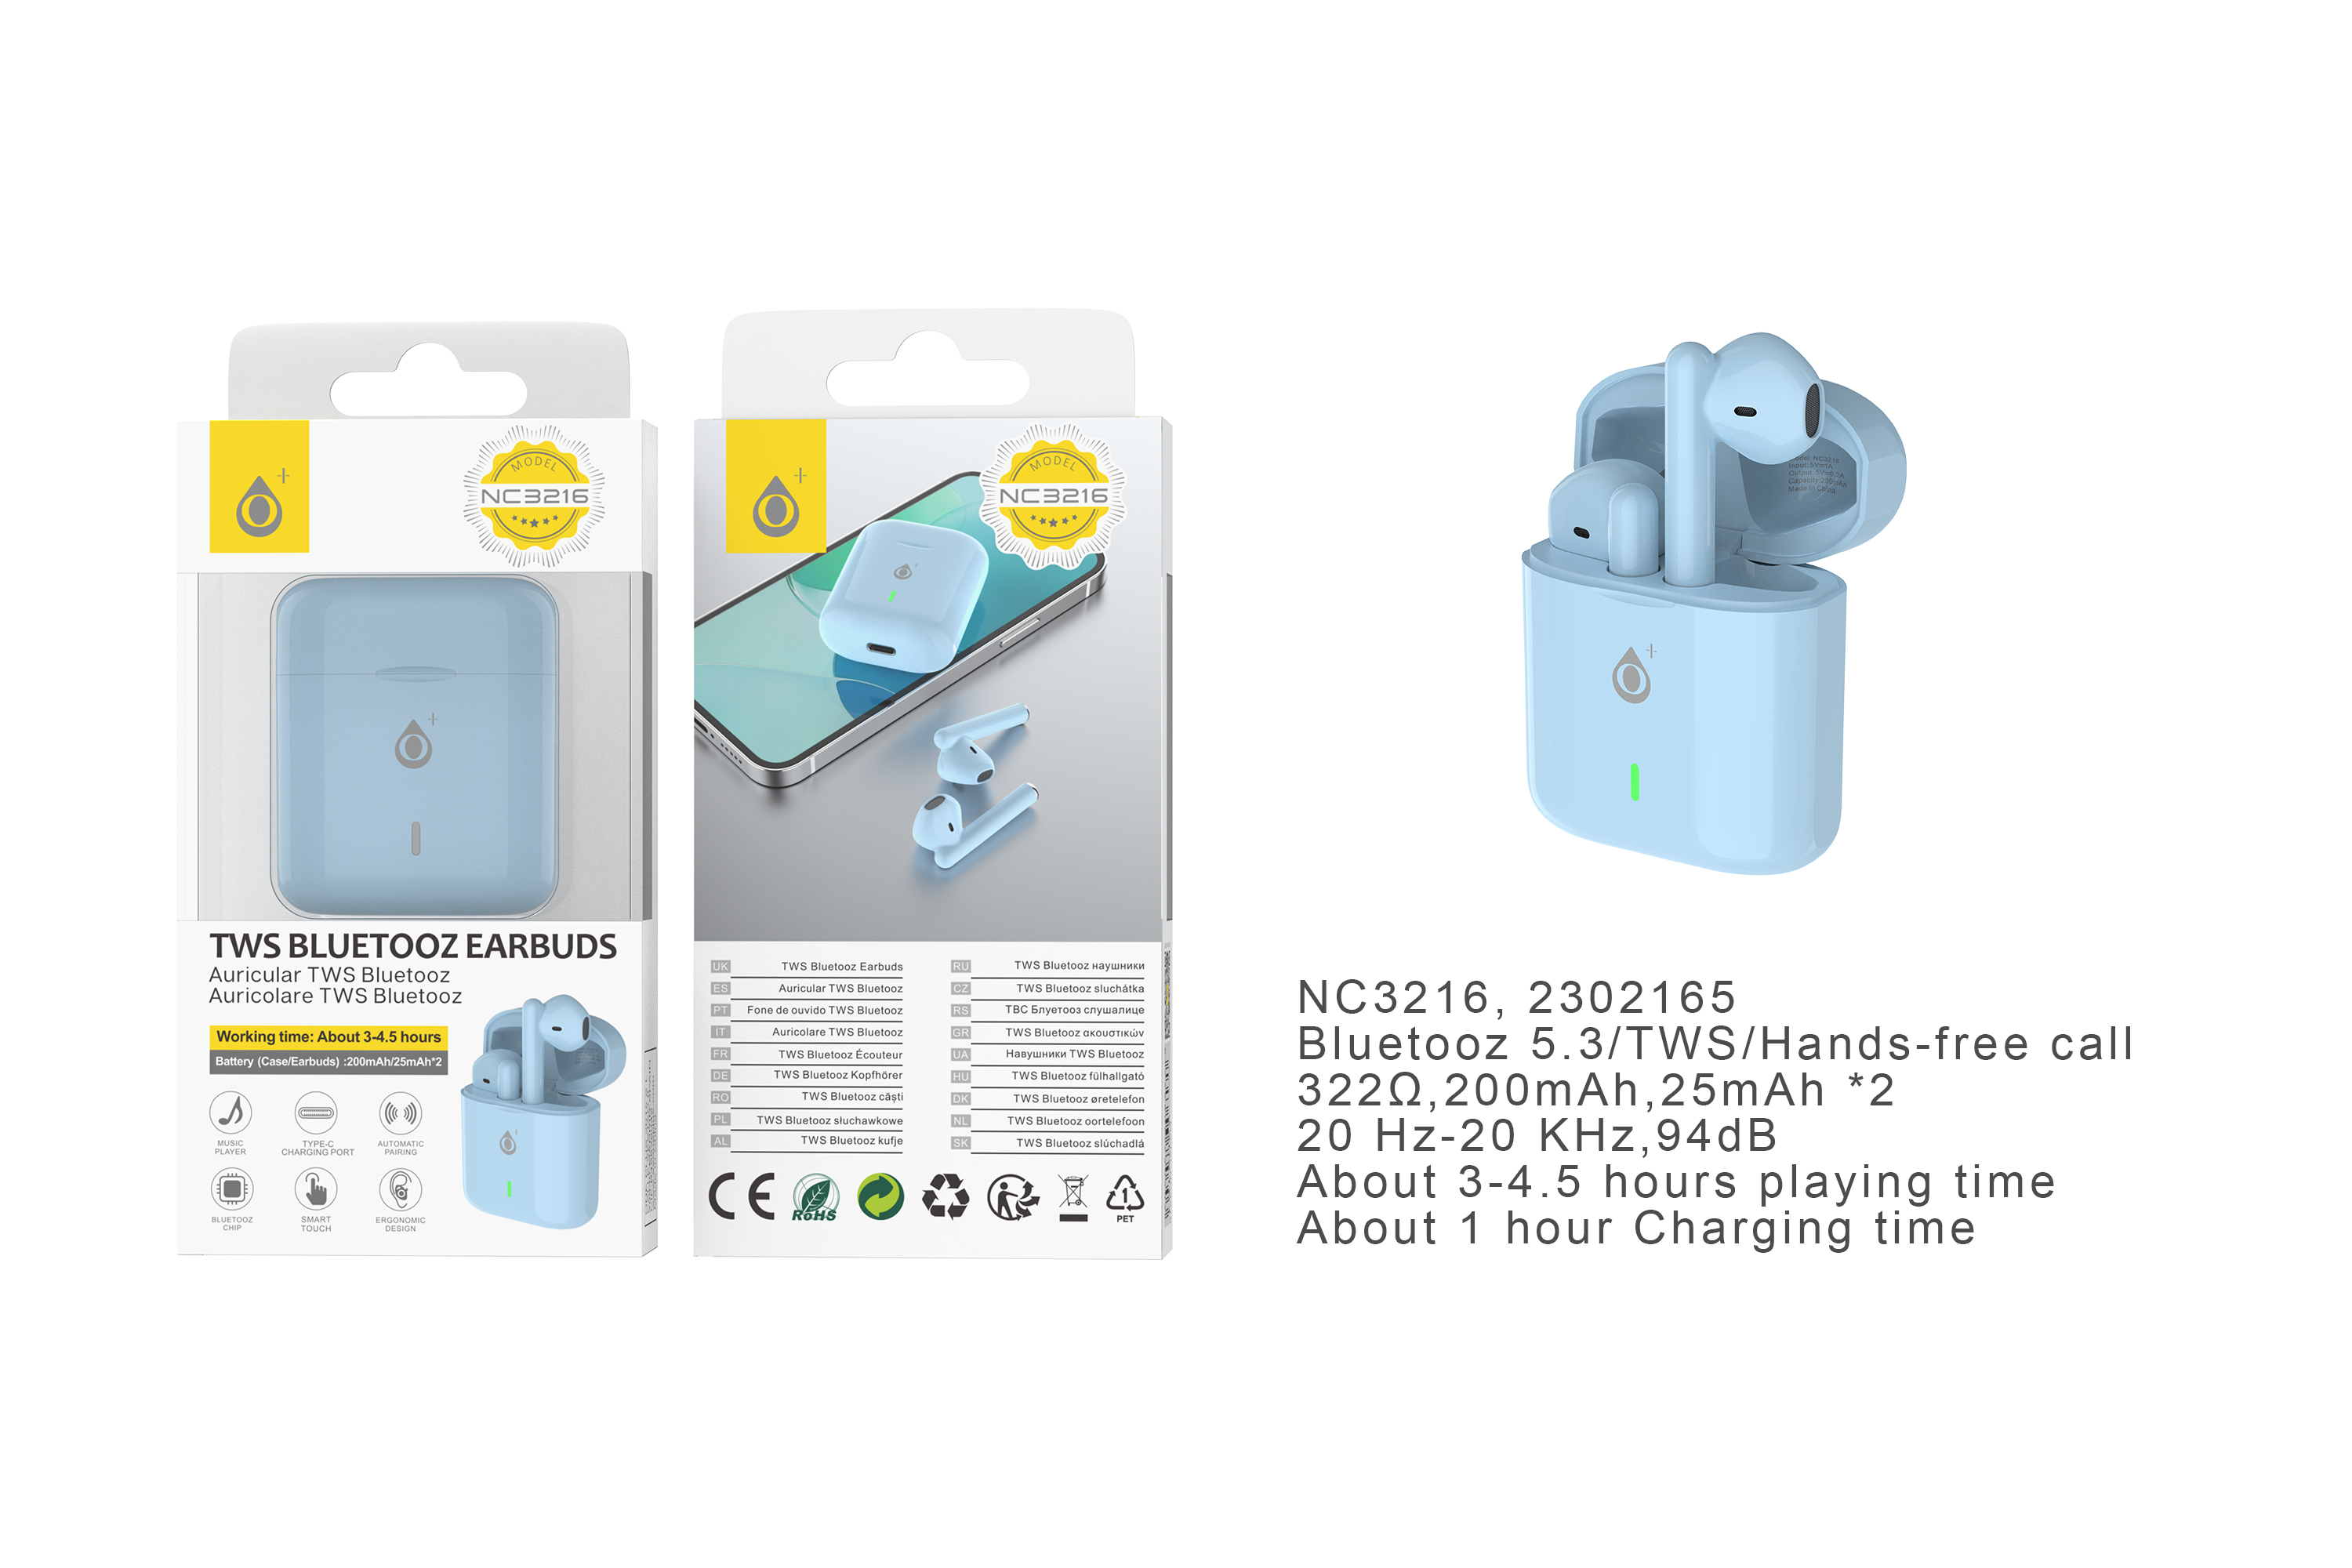 NC3216 AZ Auriculares Bluetooth TWS Carrie (25mAh*2) con estuche cargable(200mAh), Soporta mano libre, Azul